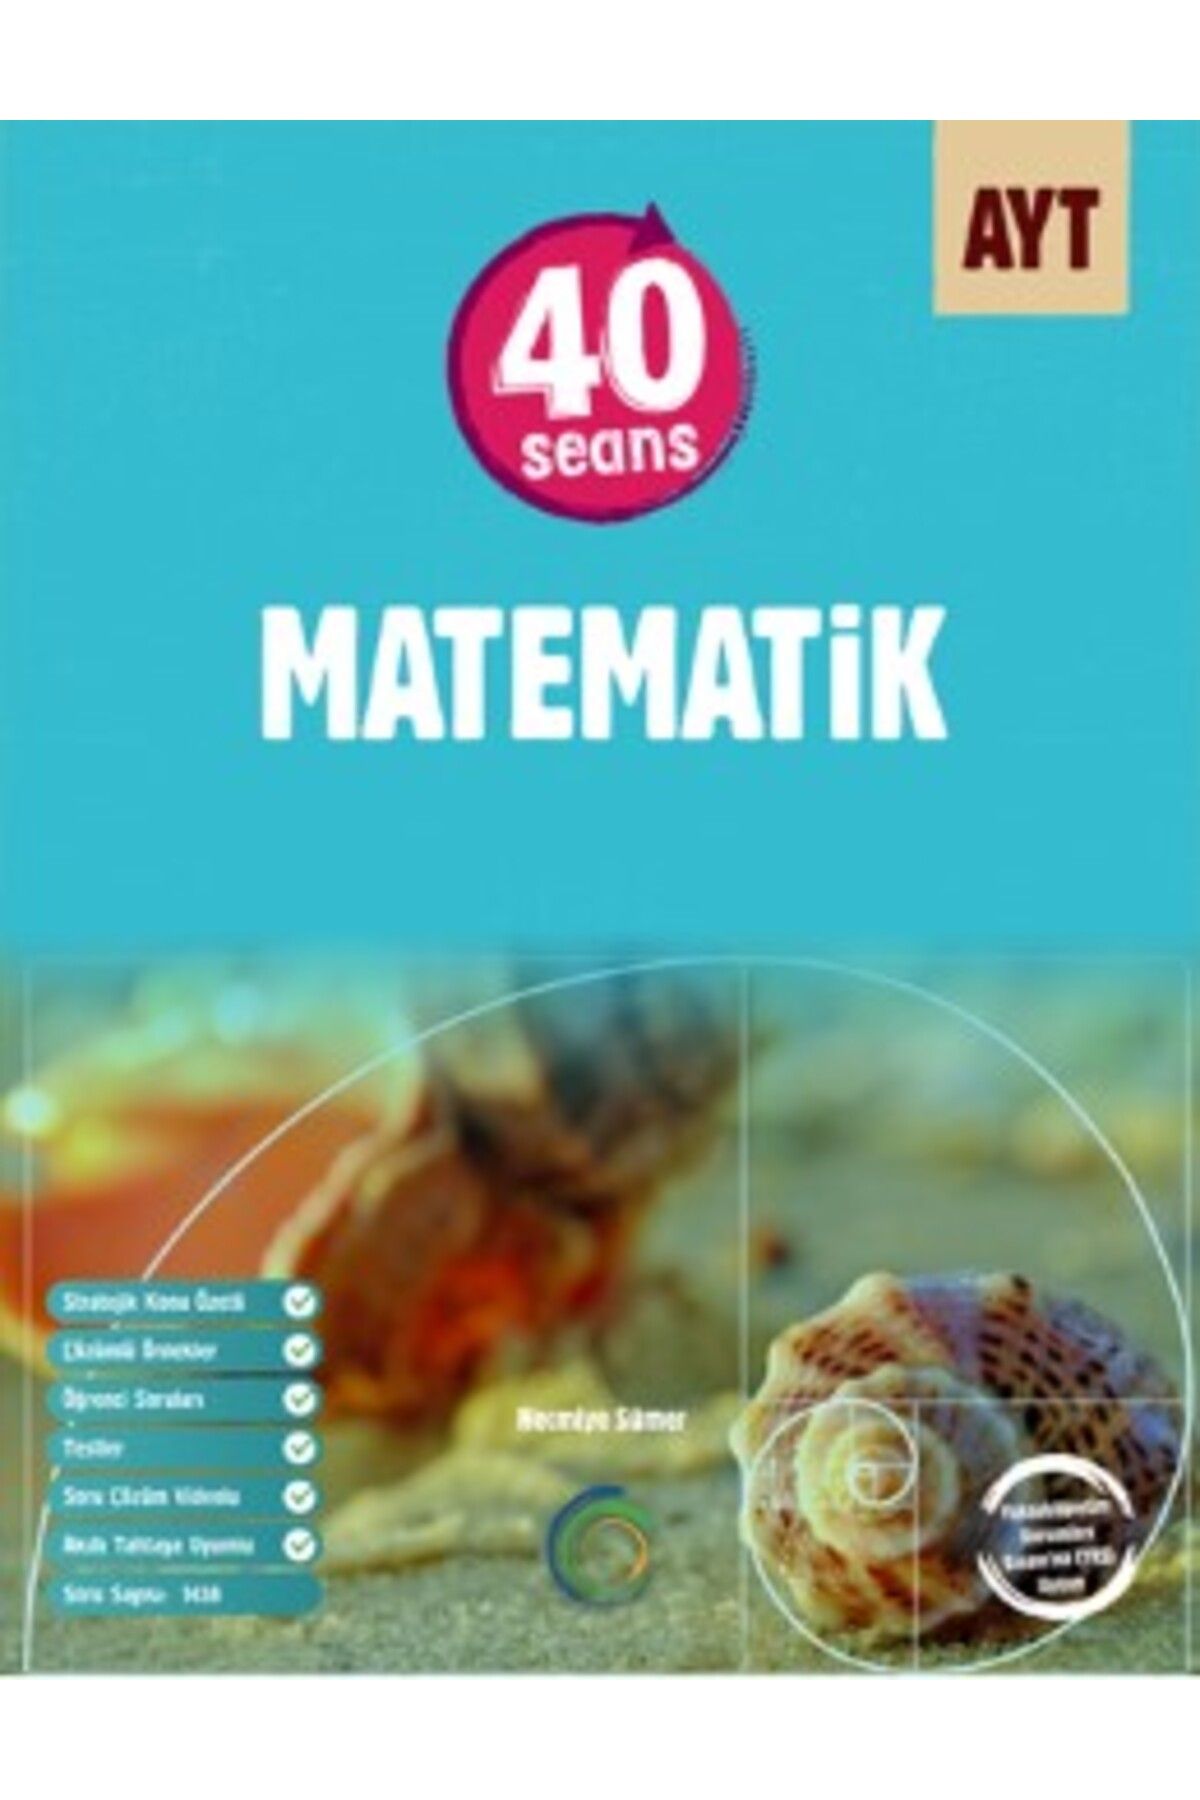 Okyanus Yayınları Okyanus Ayt 40 Seansta Matematik